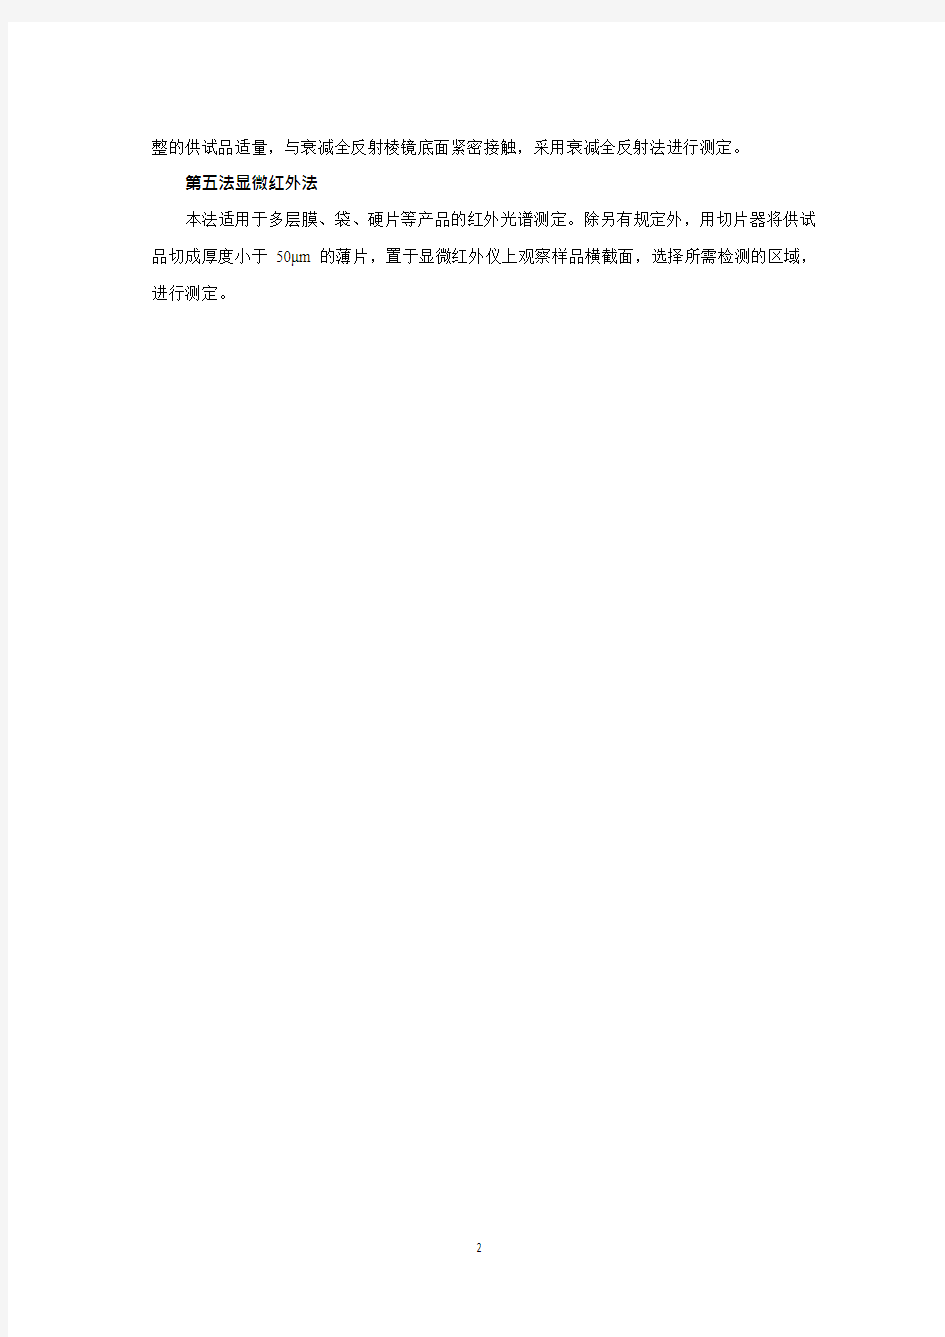 2020版《中国药典》药包材—包装材料红外光谱测定法公示稿